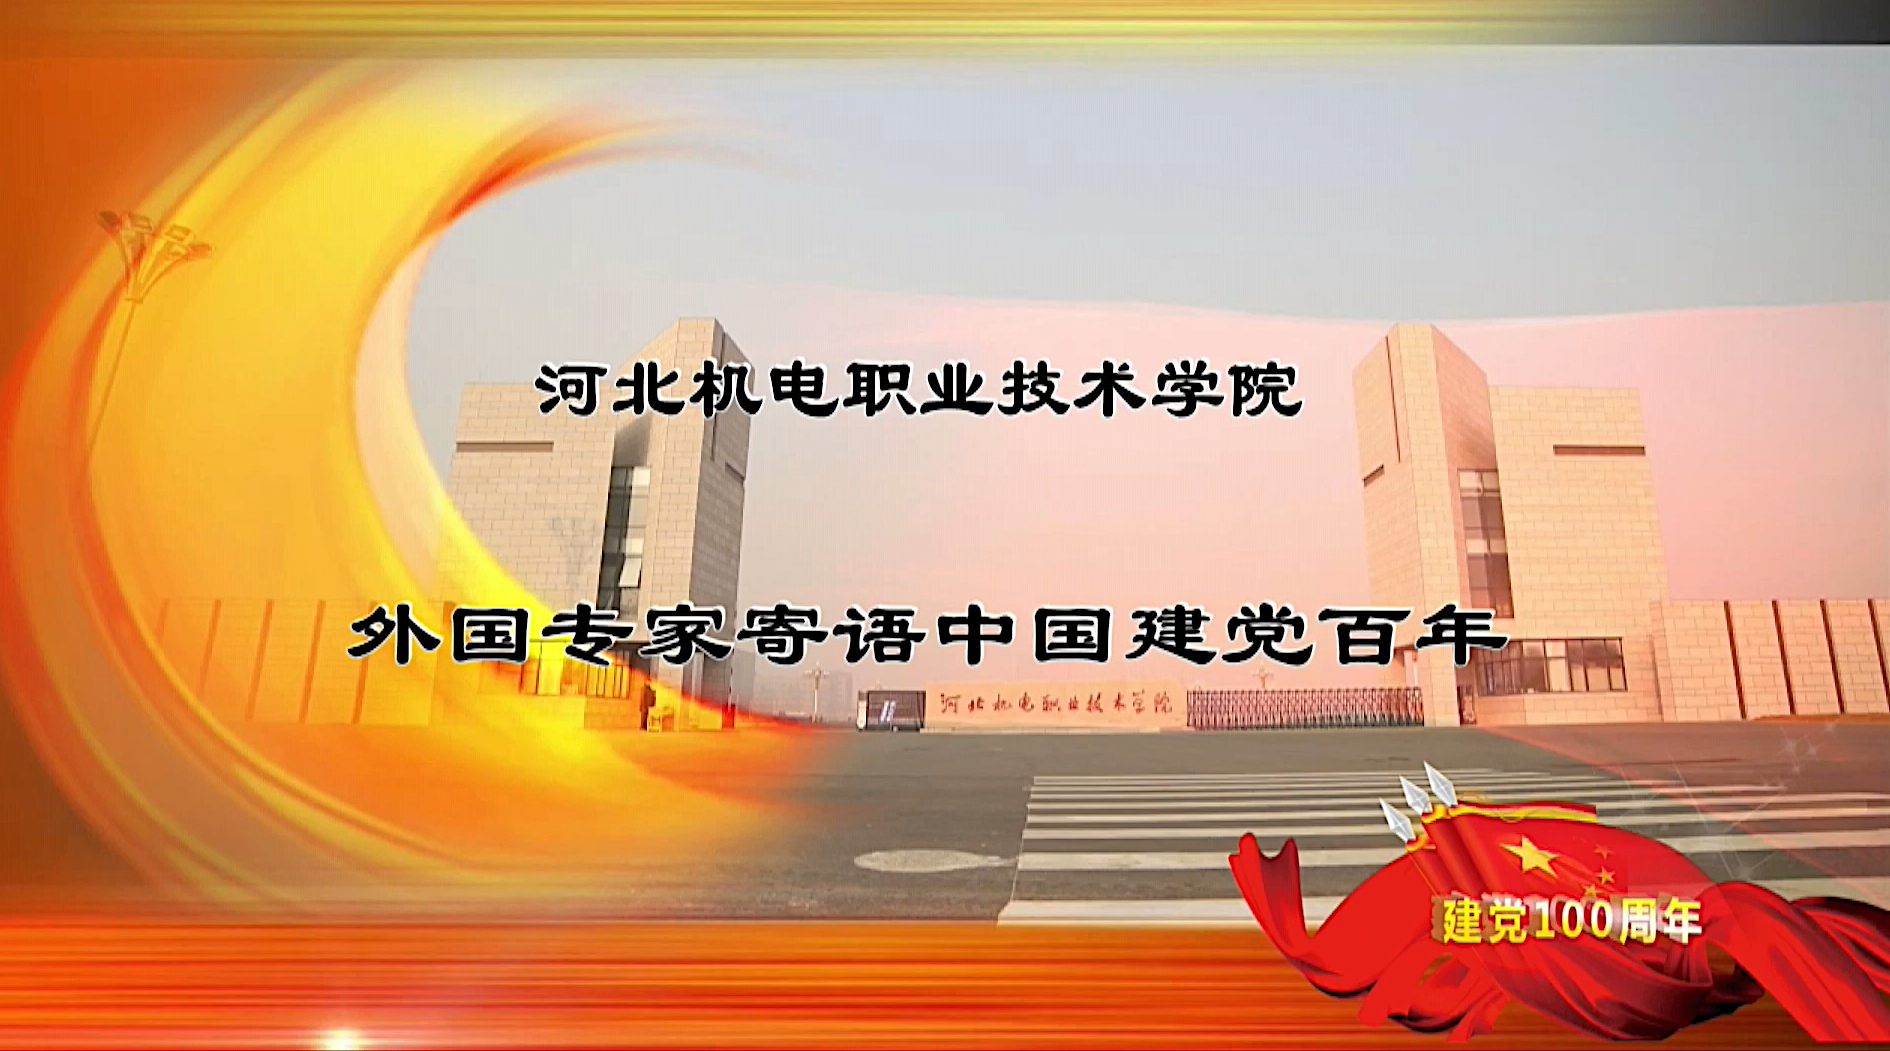 永利集团国际友人寄语中国建党百年视频在《国际人才交流杂志》发布